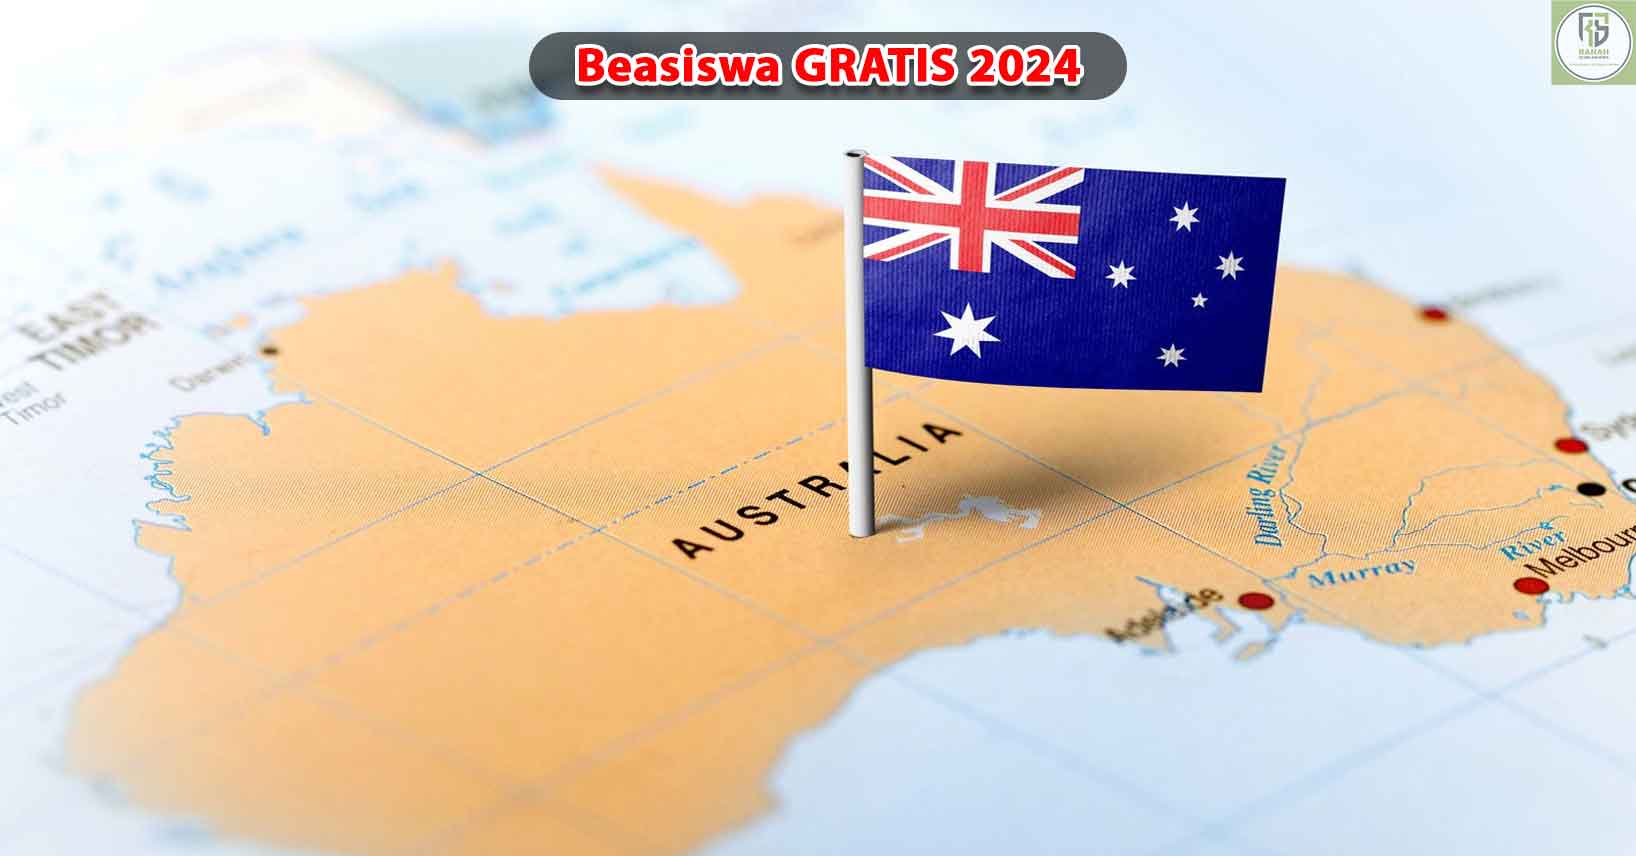 3-Beasiswa-Gratis-untuk-Kuliah-di-Australia-2024.